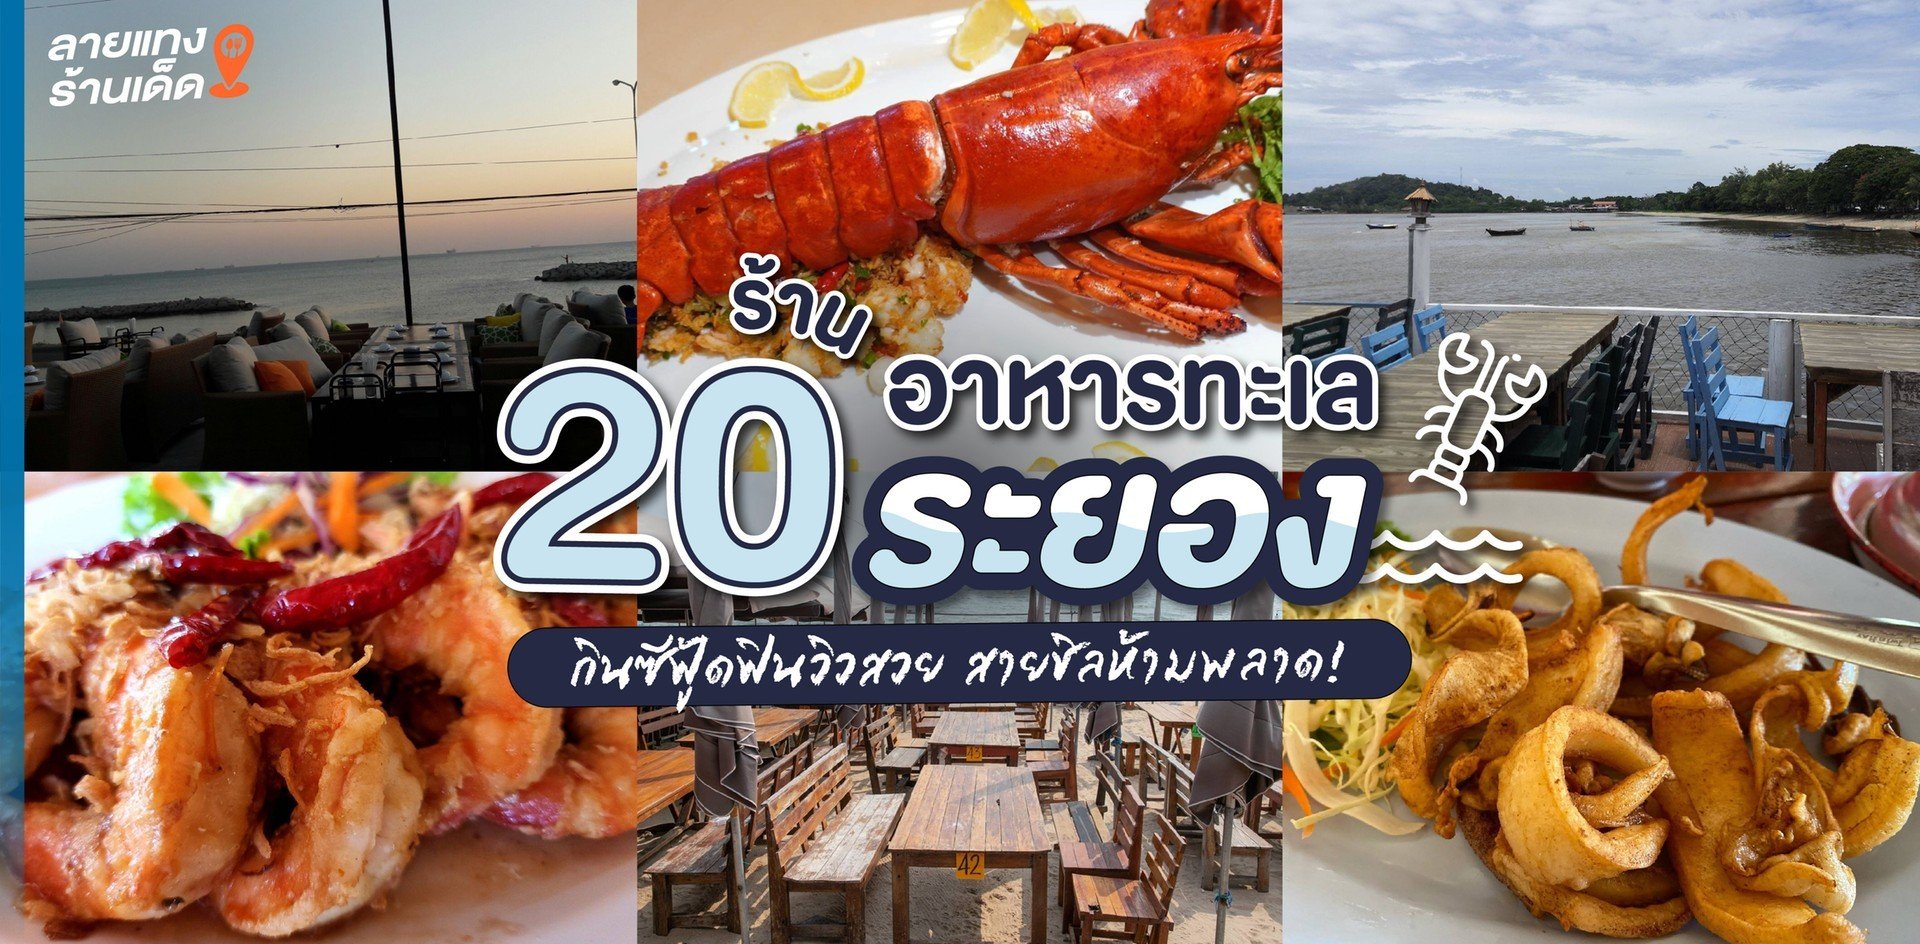 20 ร้านอาหารทะเลระยอง กินซีฟู้ดพร้อมฟินวิวทะเลสวย สายชิลไม่ควรพลาด!